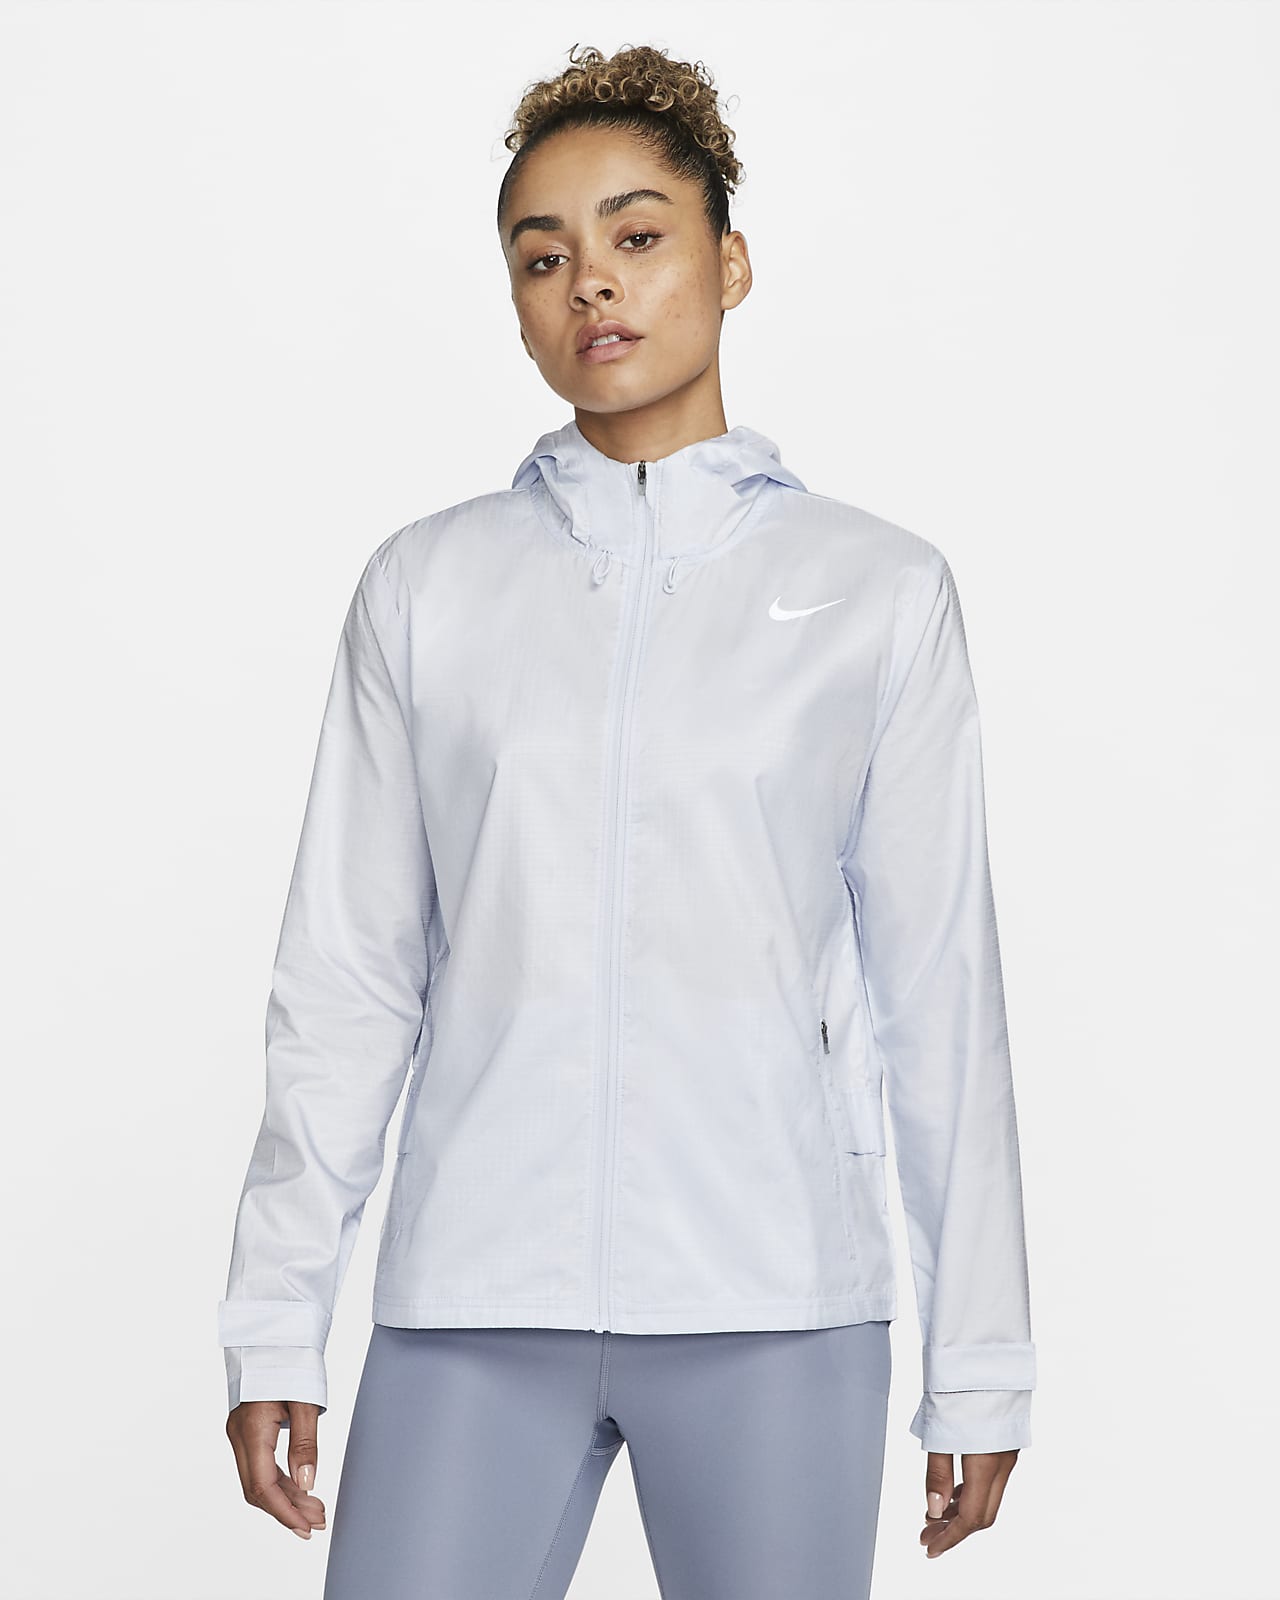 Giacca da running Nike Essential - Donna